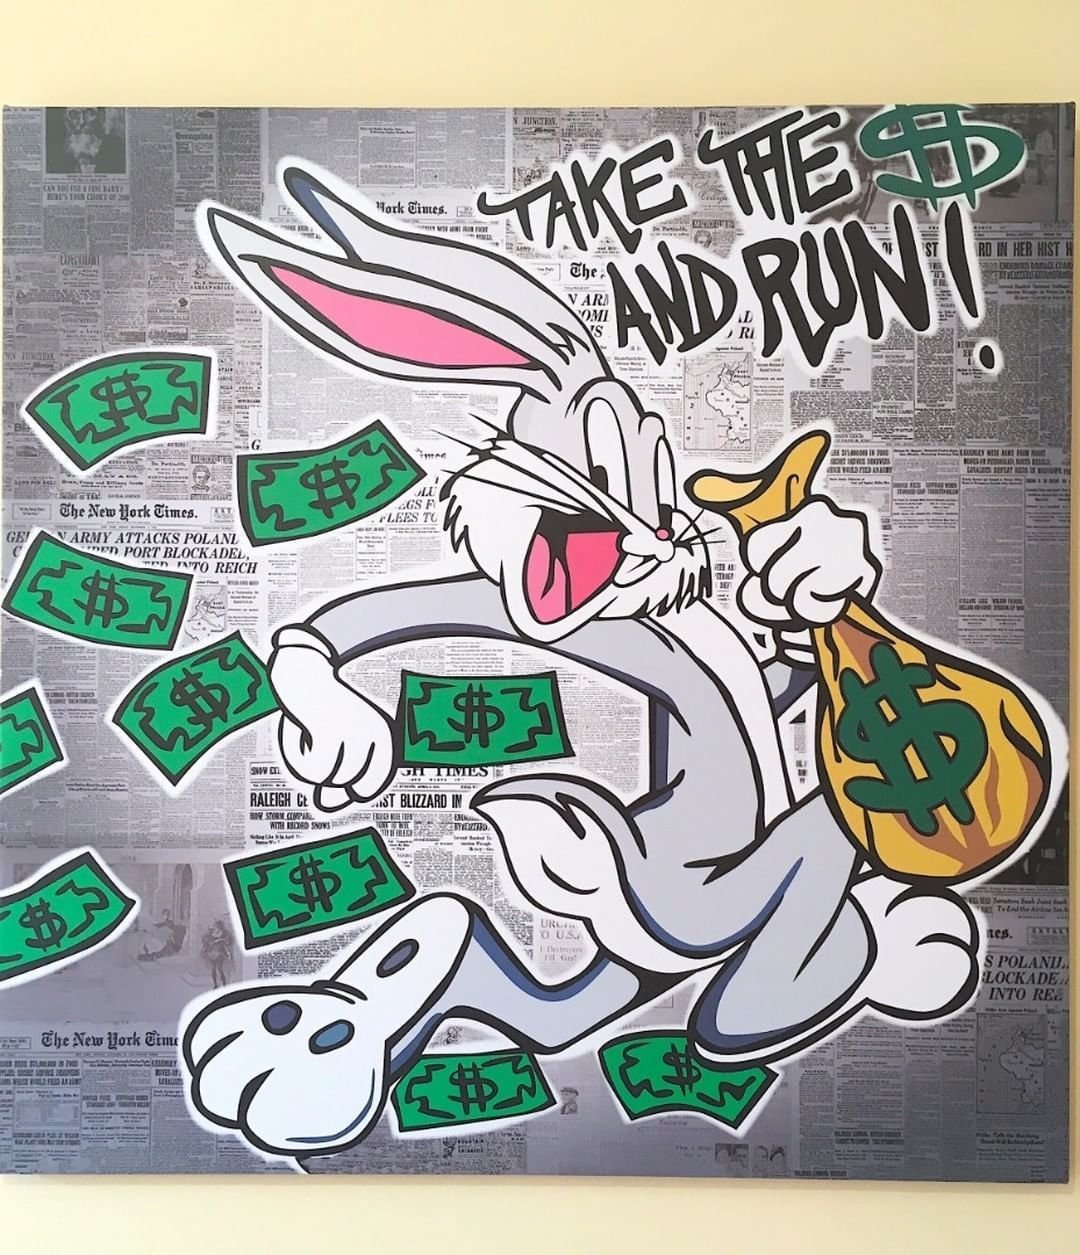 Money bunny. Картина граффити Багз Банни. Багз Банни Монополи. Багз Банни арт с деньгами. Плакат граффити.